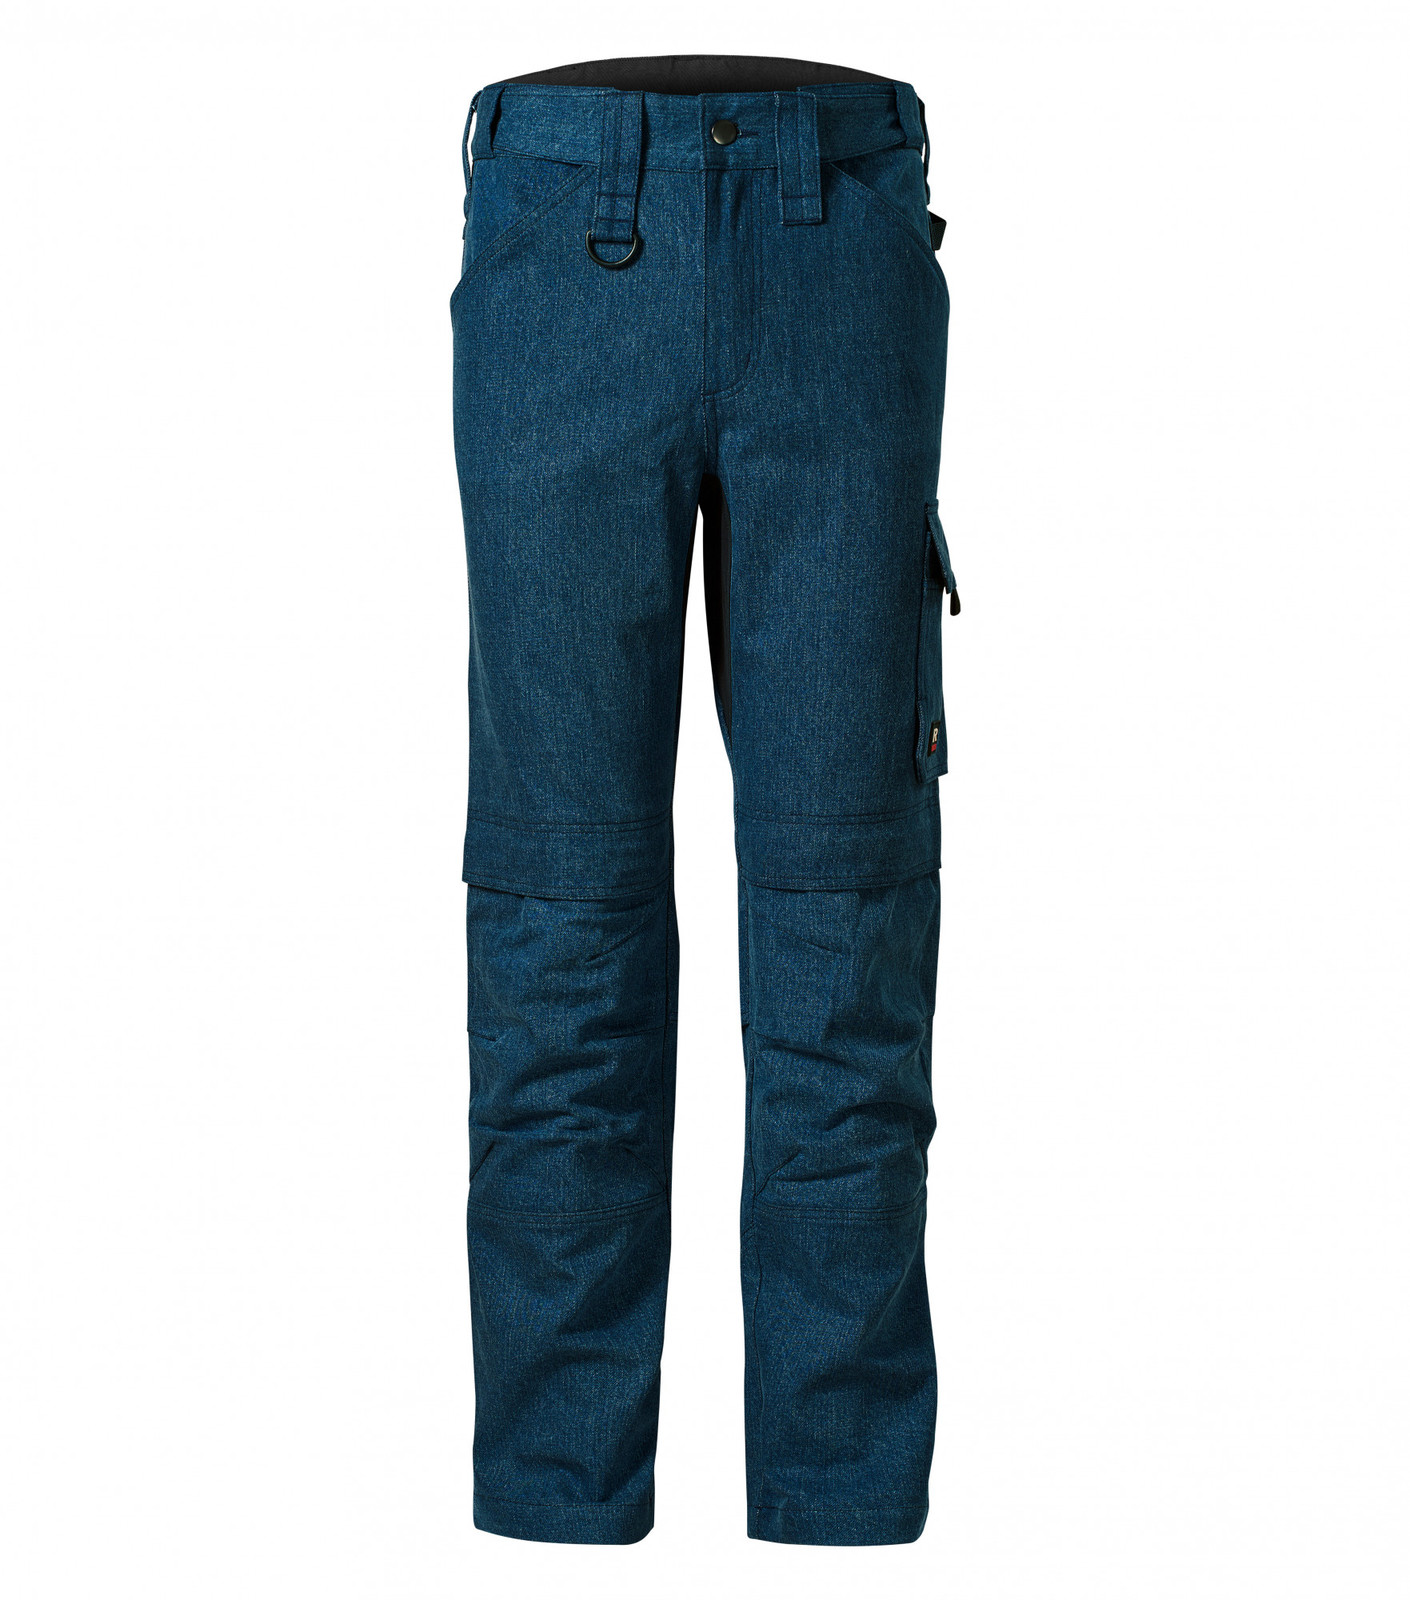 Pánske pracovné džínsy Rimeck Vertex W08 - veľkosť: 50 predĺžené, farba: tmavá navy